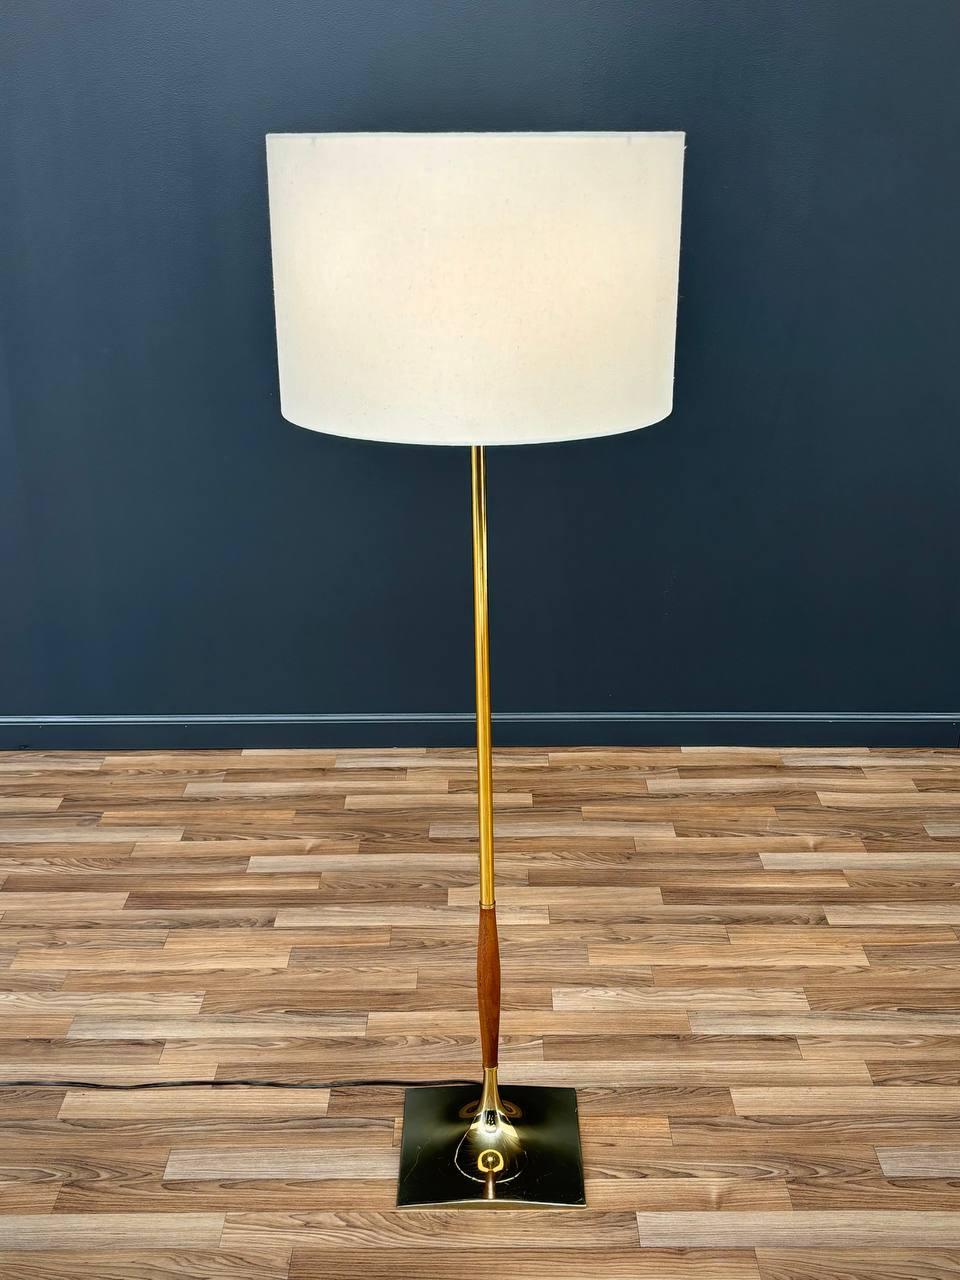 Neu verkabelt, neuer Lampenschirm aus Leinen

Abmessungen: 
Lampe:
54 